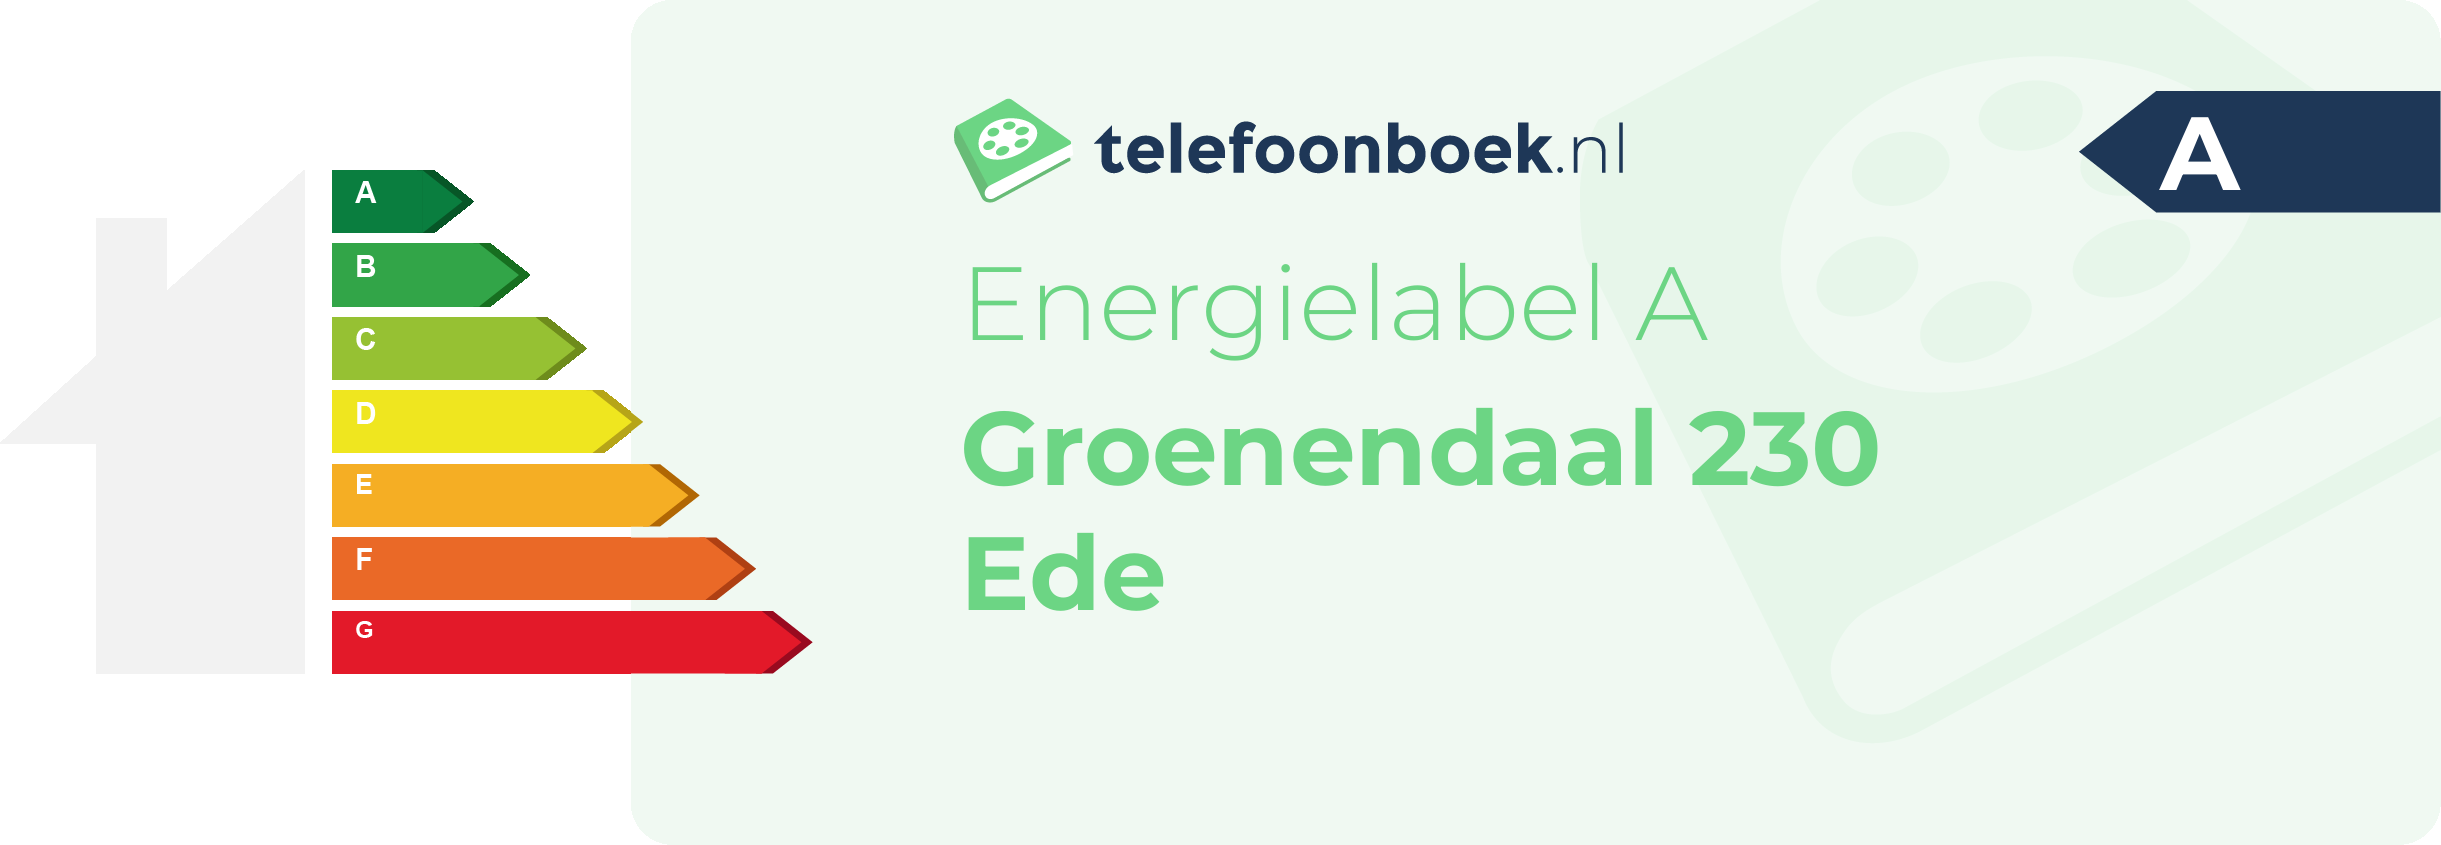 Energielabel Groenendaal 230 Ede